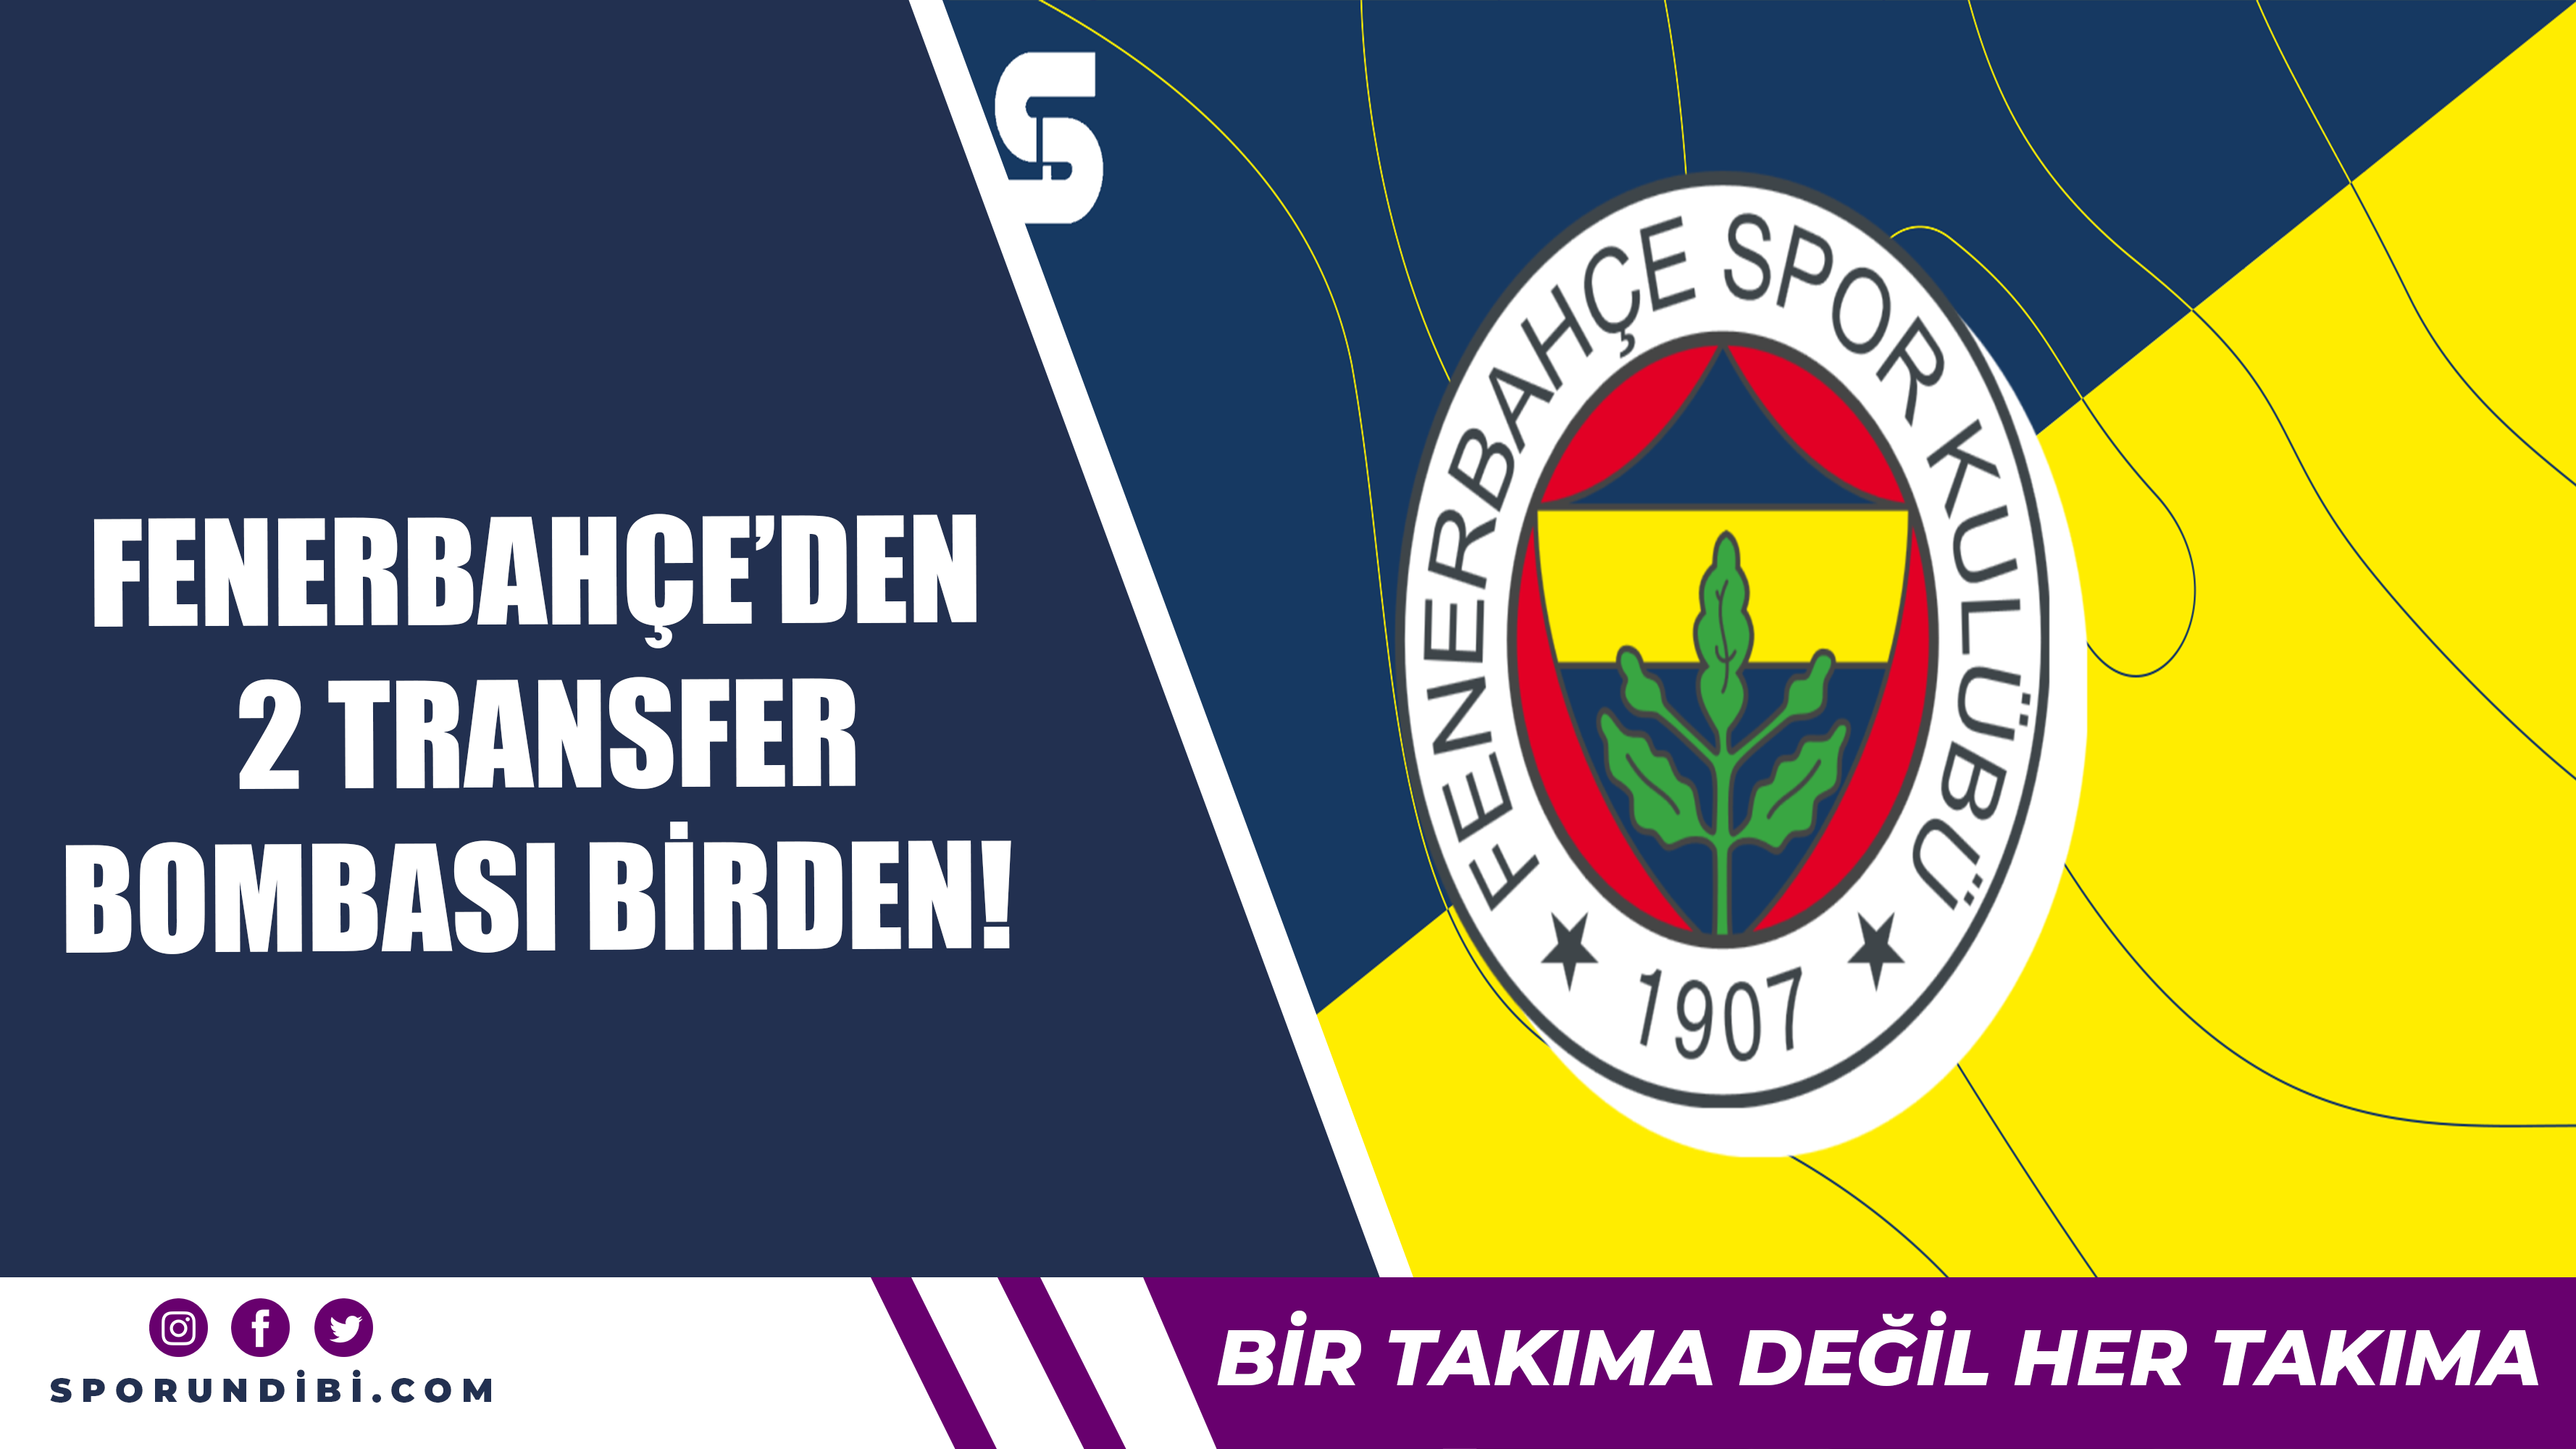 Fenerbahçe'den 2 transfer bombası birden!